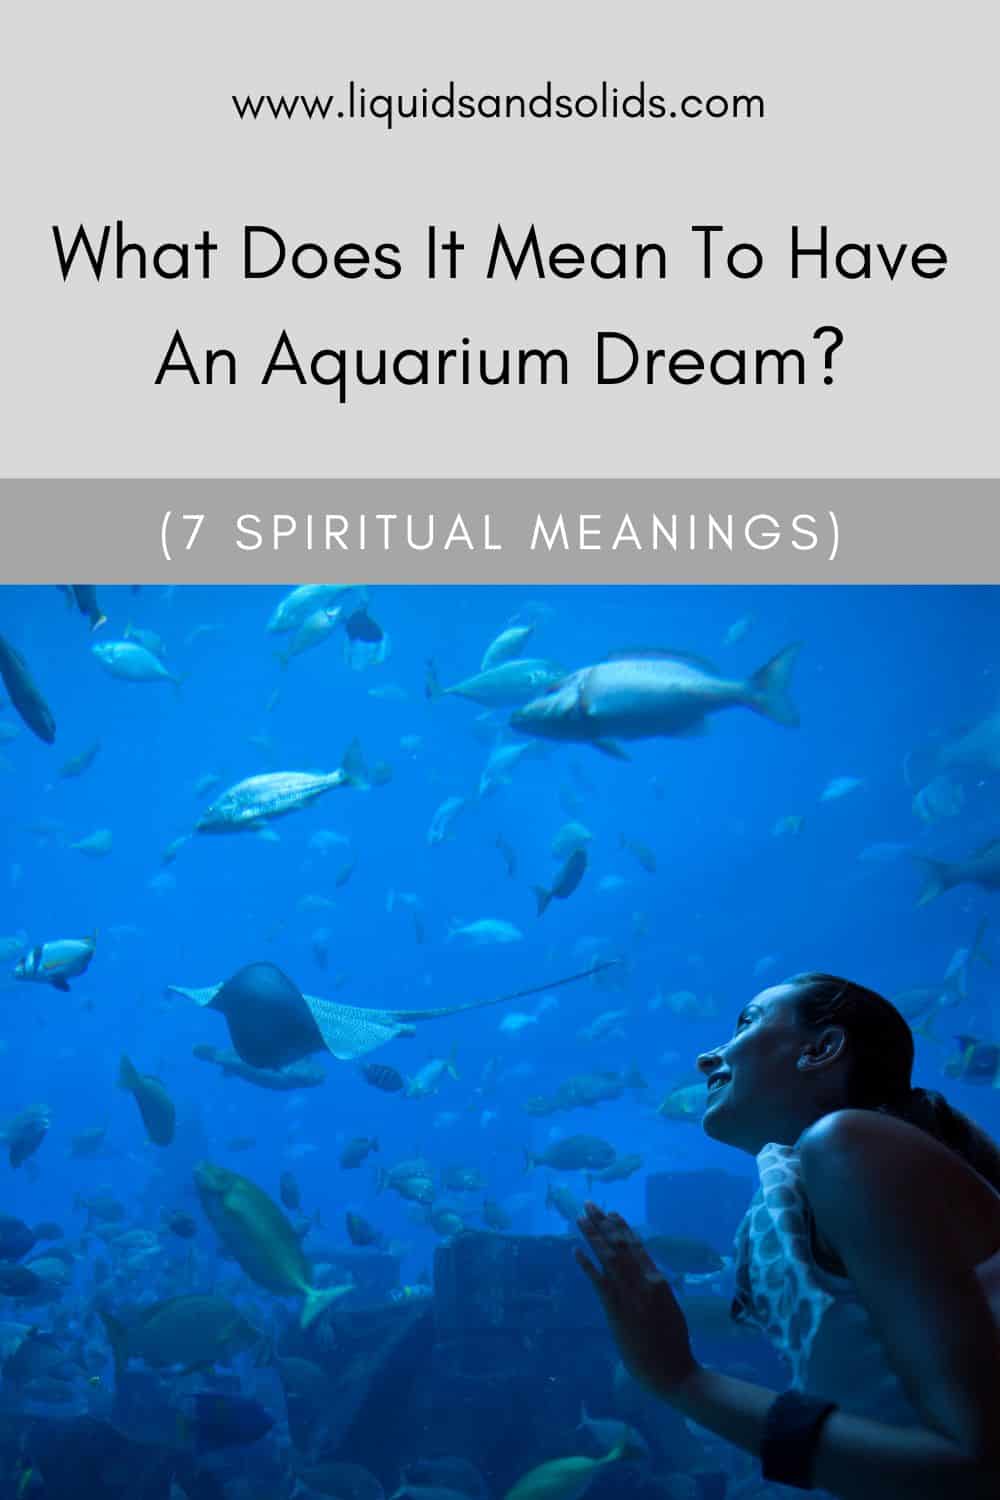  Mit jelent az akváriumi álom? (7 spirituális jelentés)